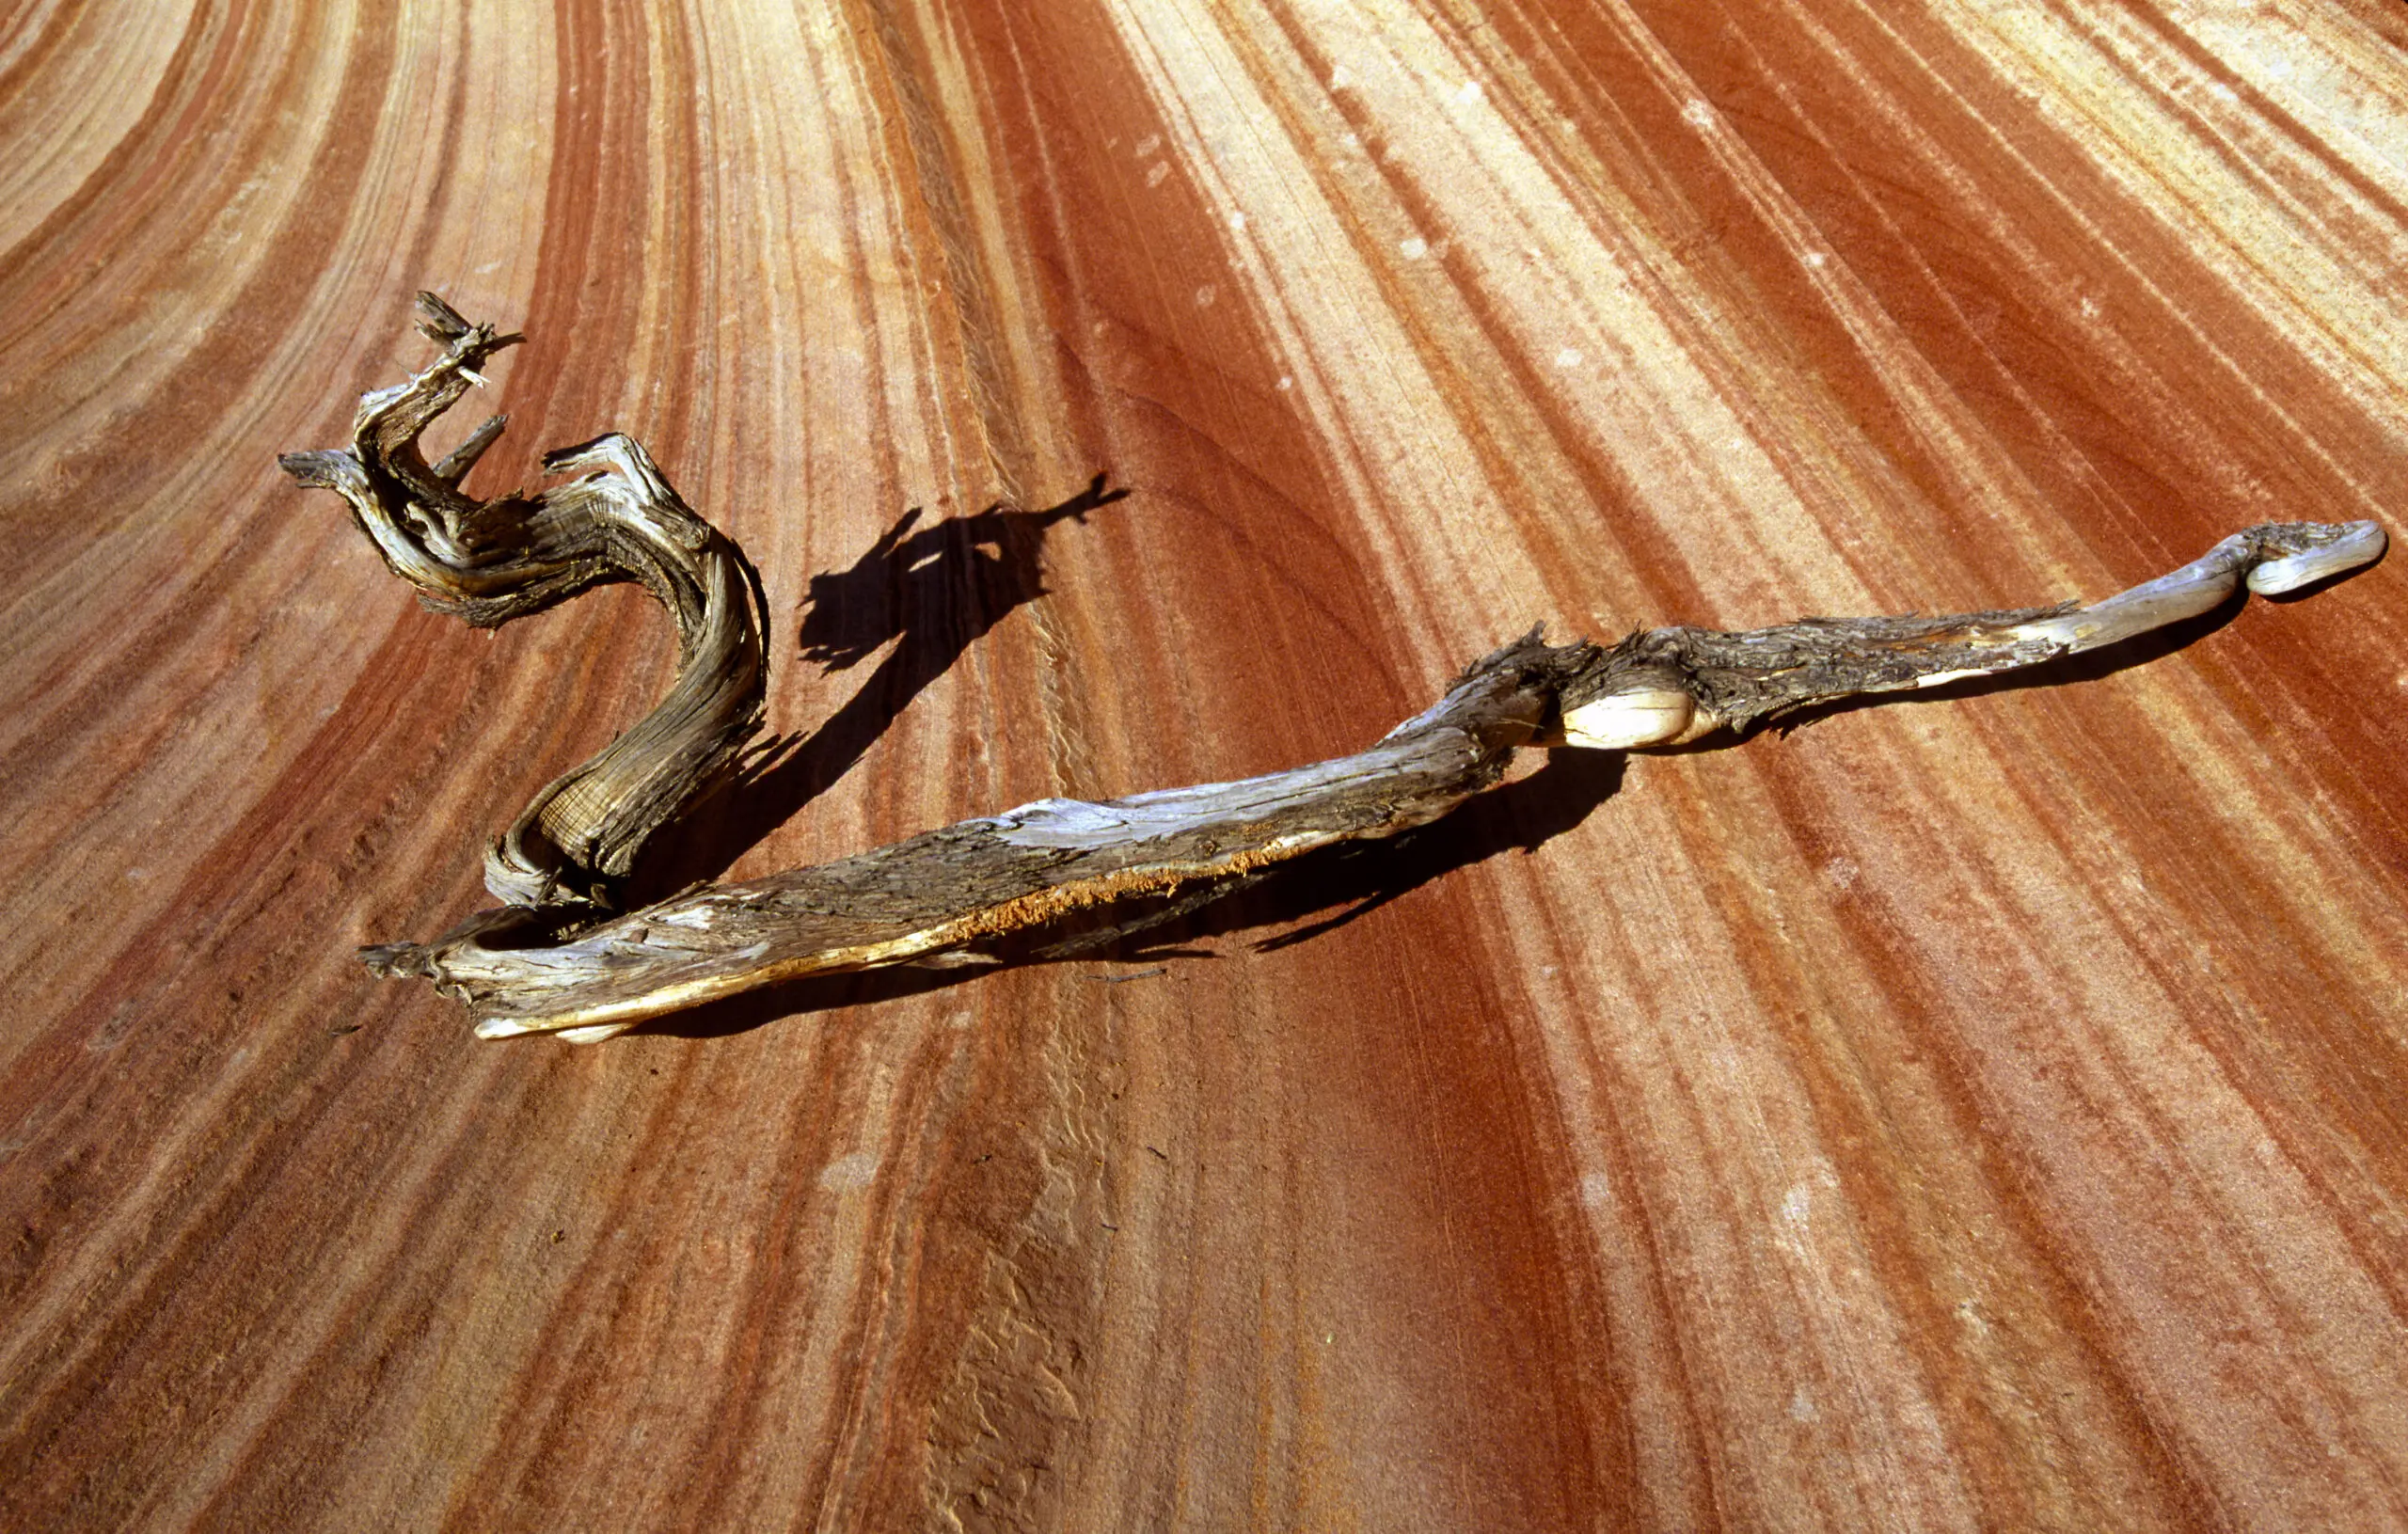 Wandbild (269) Wooden Snake präsentiert: Details und Strukturen,Natur,Landschaften,Wüste,Detailaufnahmen,Sonstige Naturdetails,Erde